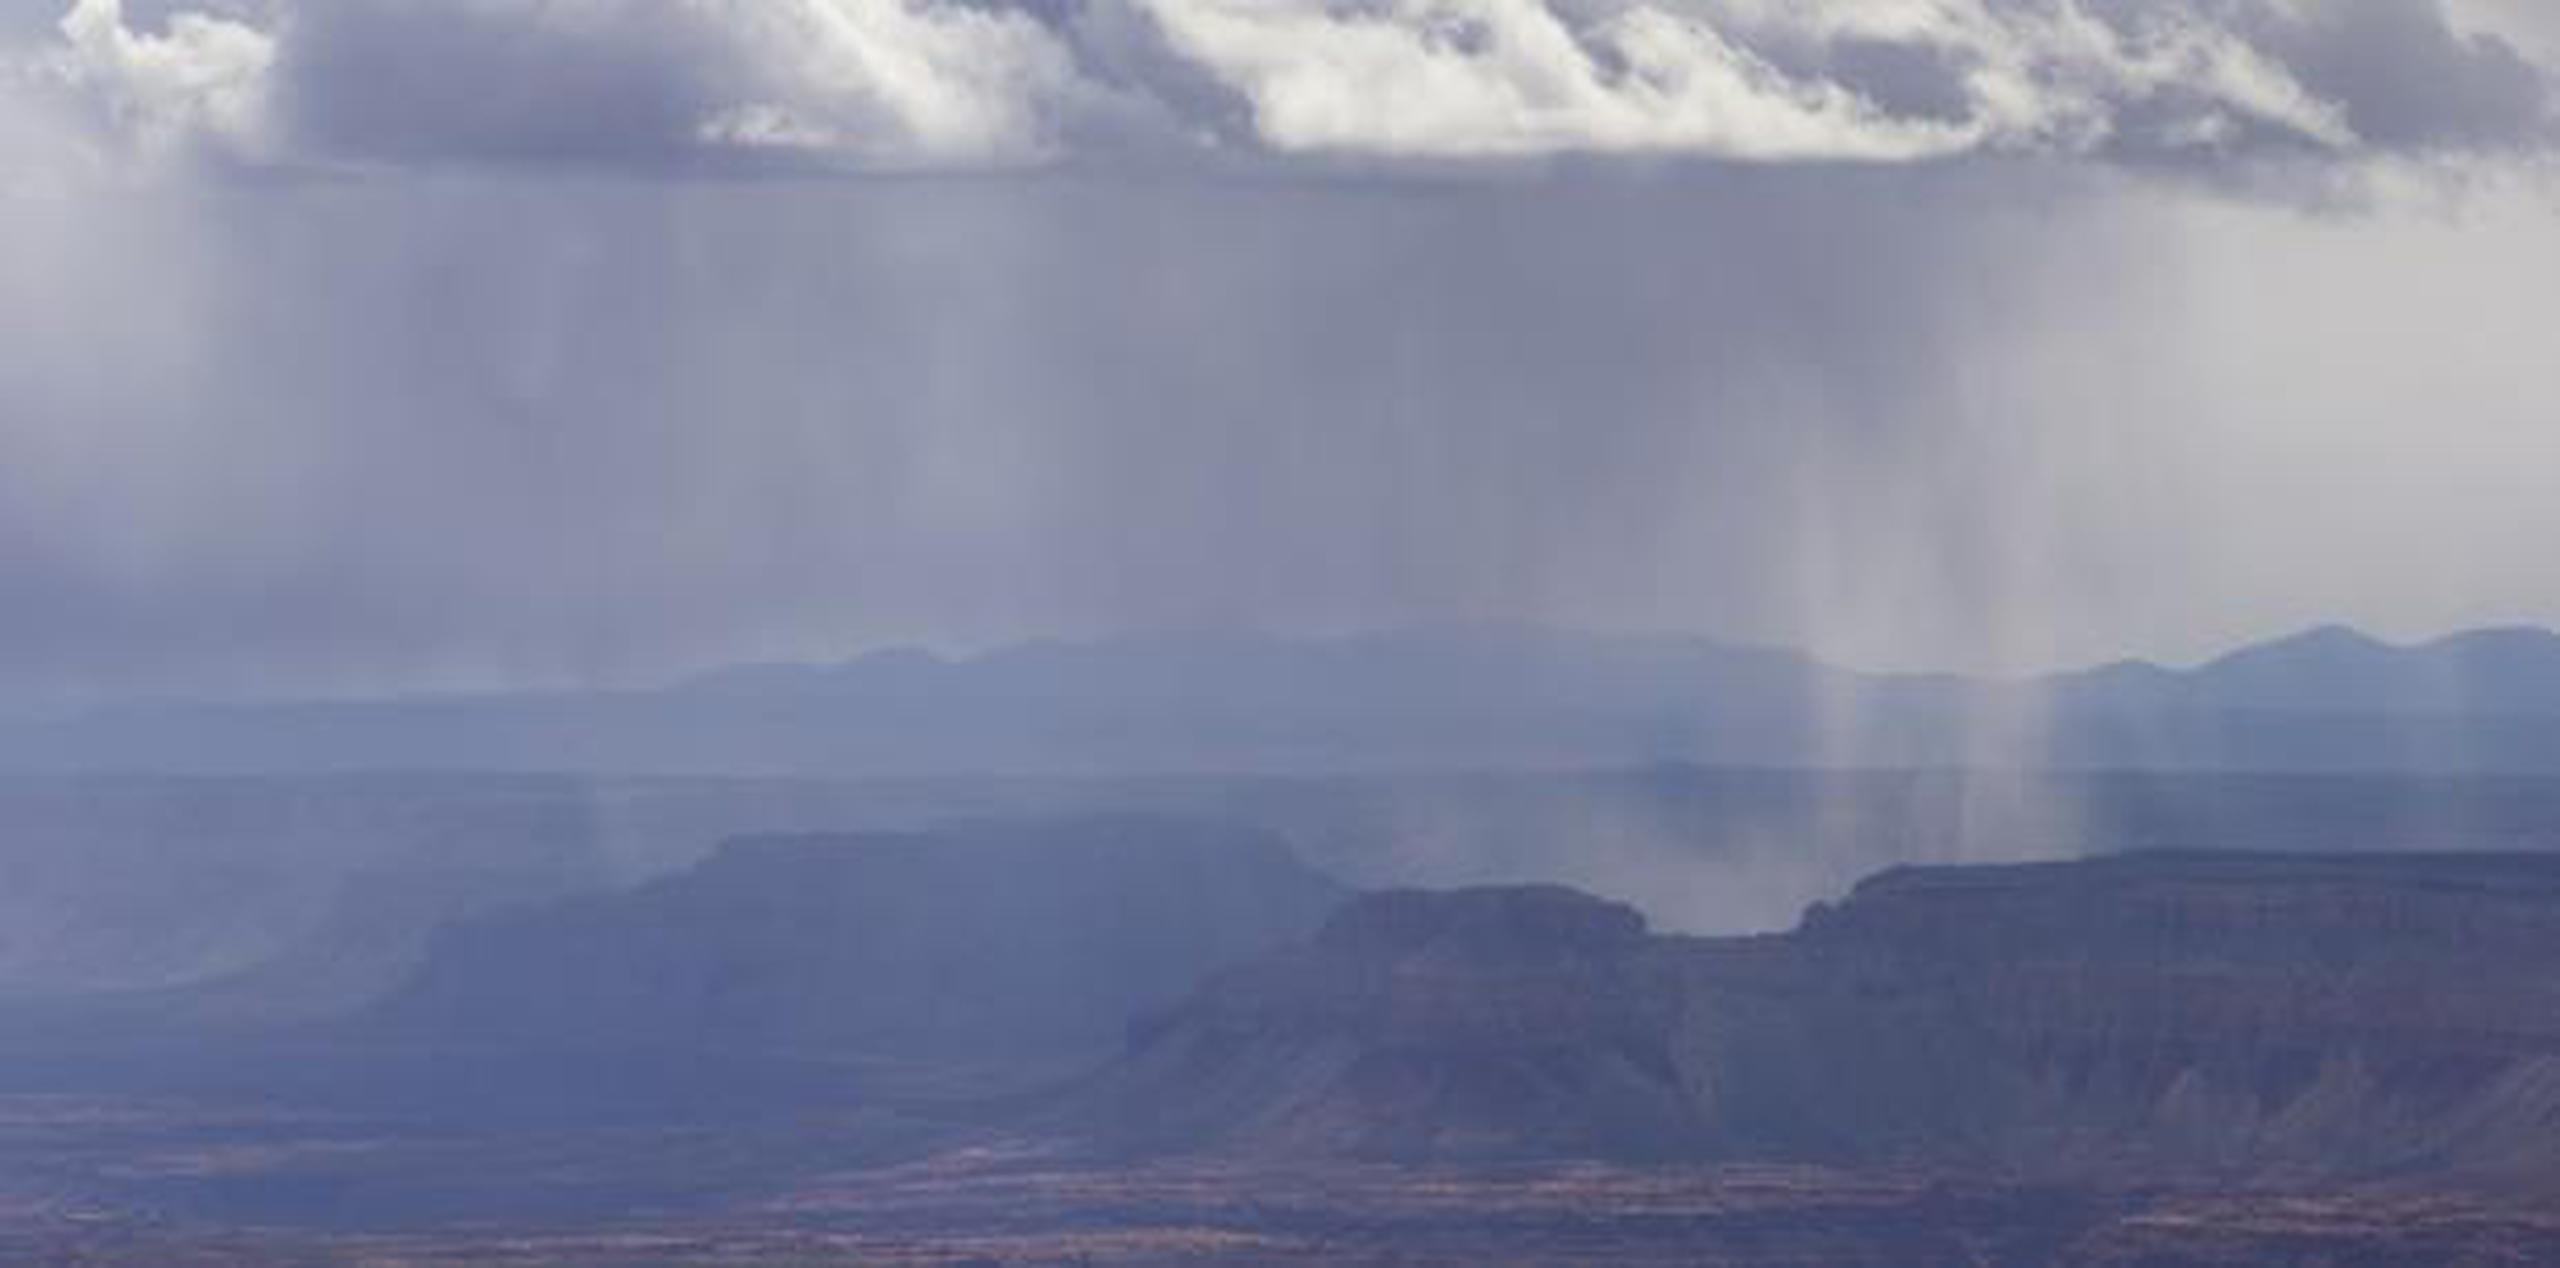 Durante la temporada de lluvias que caracteriza la región, las precipitaciones pueden caer de un momento a otro, a veces sumamente densas. (Shutterstock)